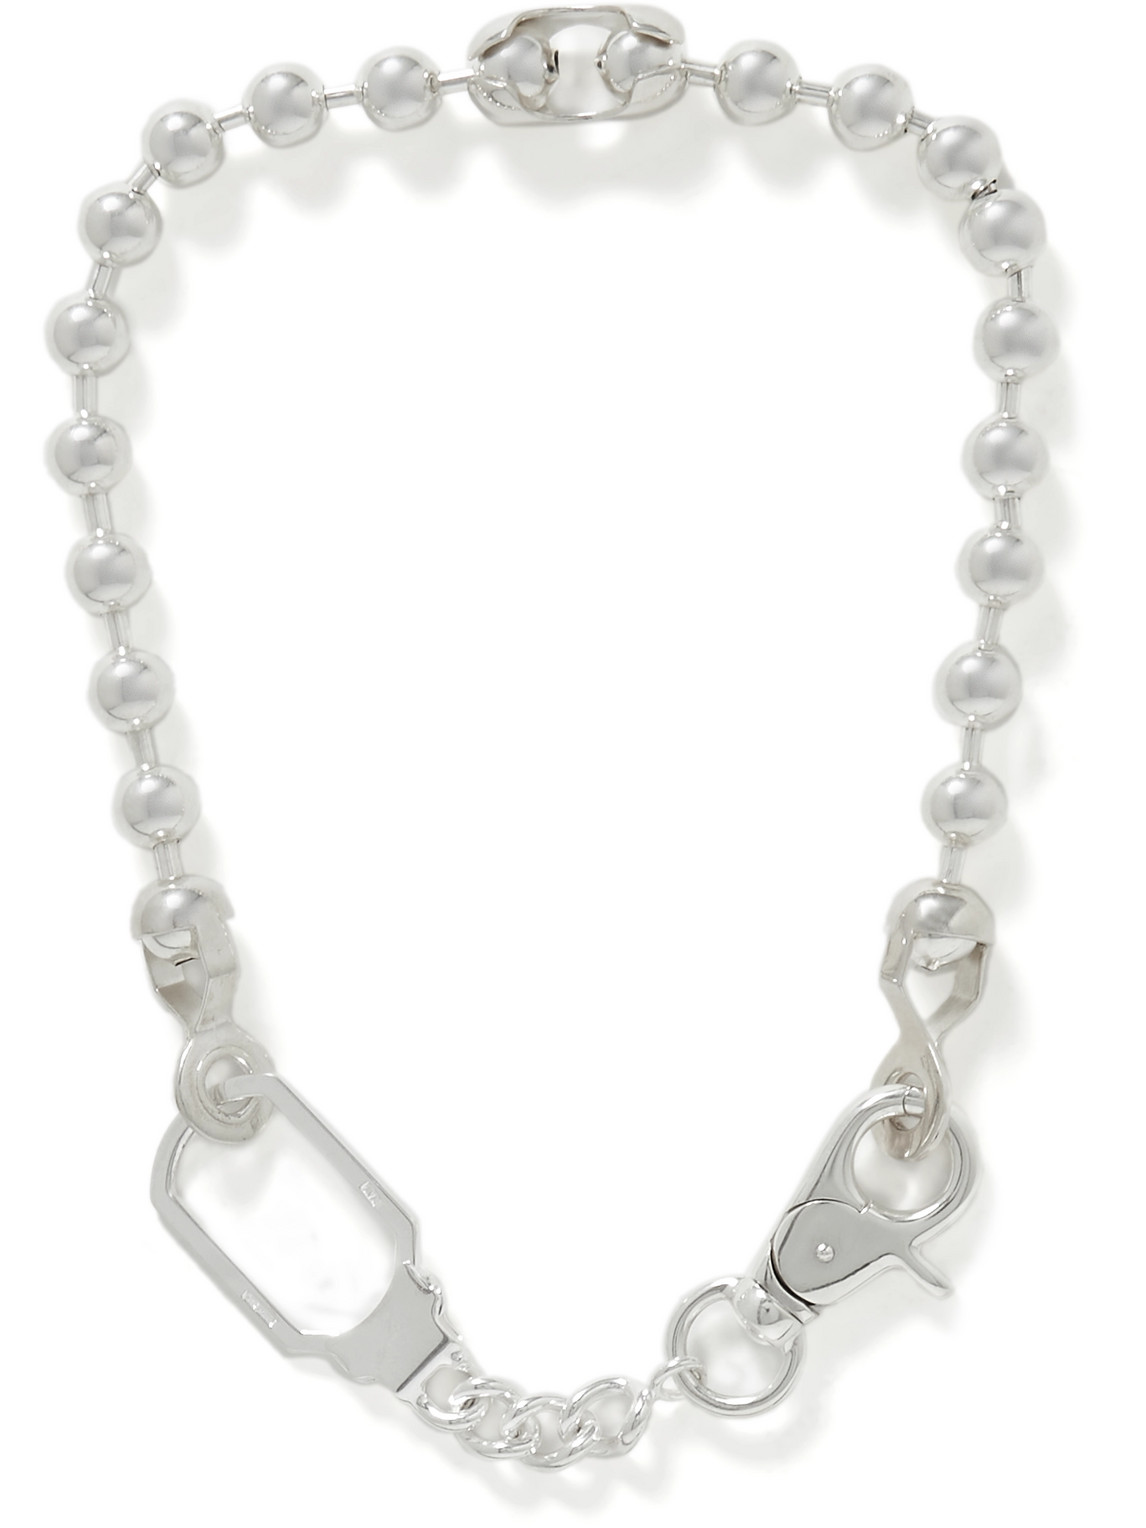 Martine Ali Sterling Silver Chain Necklace